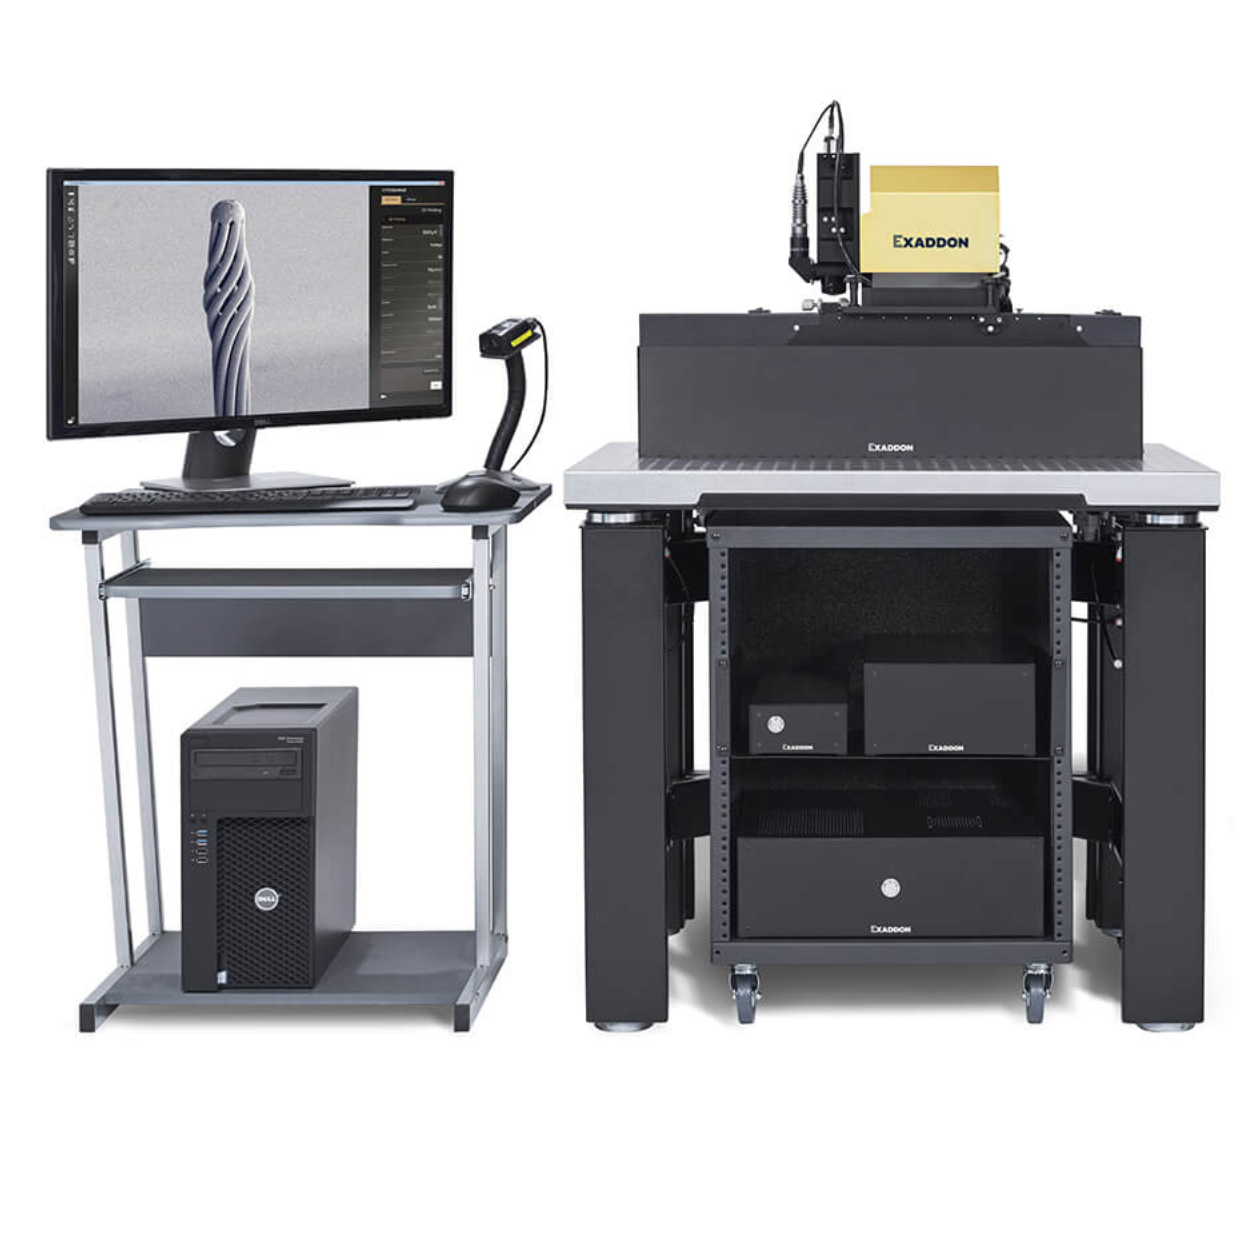 摩方精密-Exaddon CERES-微纳金属3D打印系统